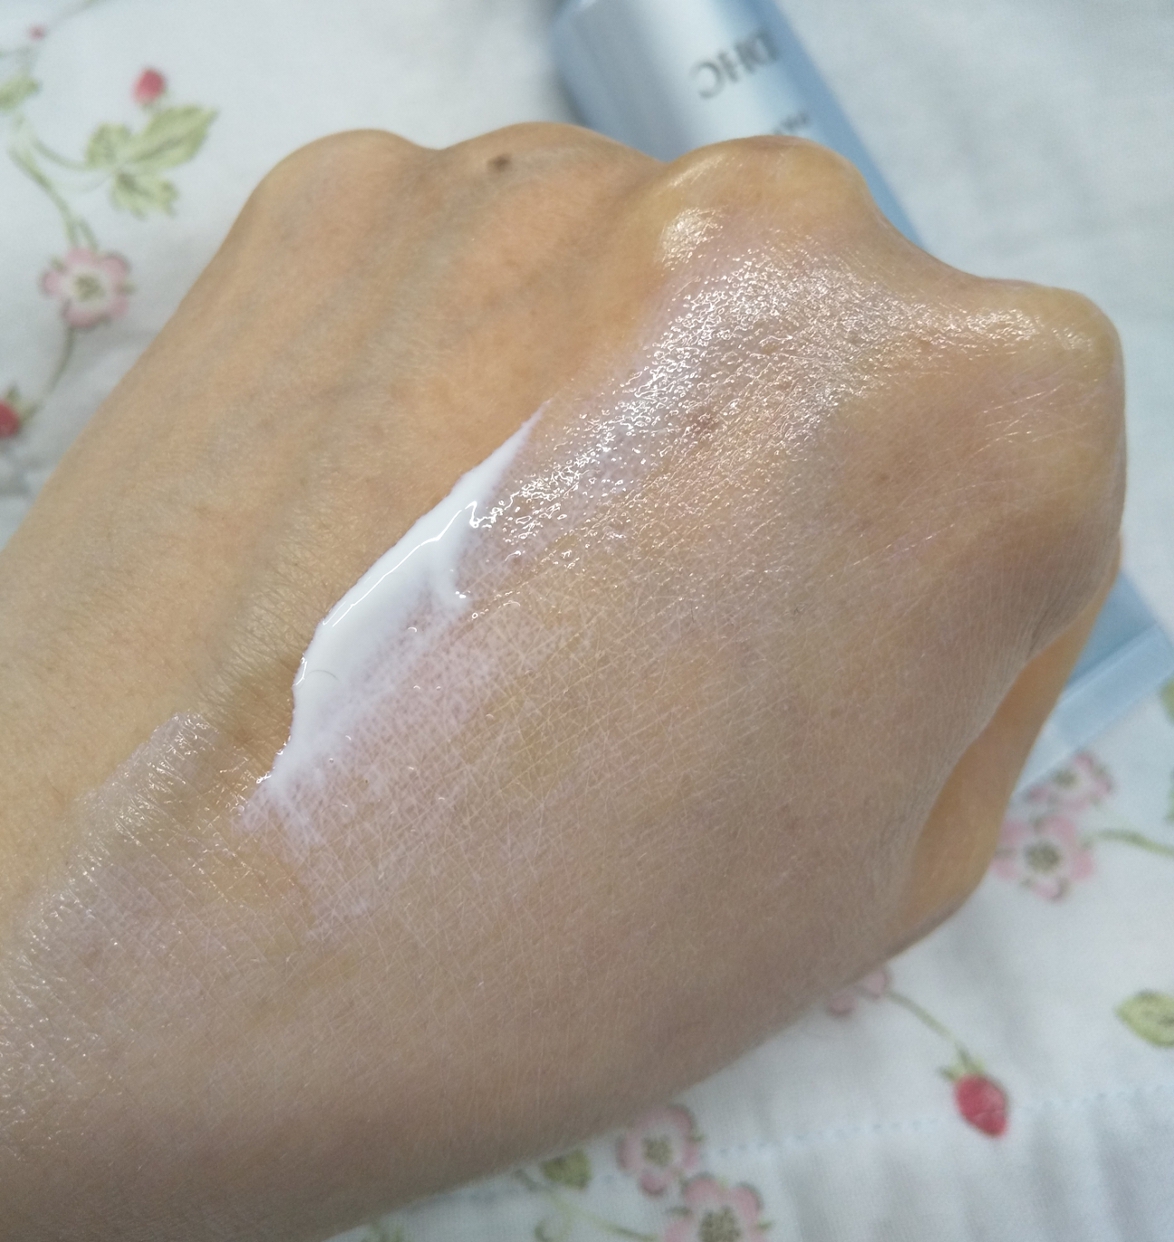 DHC(ディーエイチシー) 薬用ホワイトニングセラム UVの良い点・メリットに関するカサブランカさんの口コミ画像2